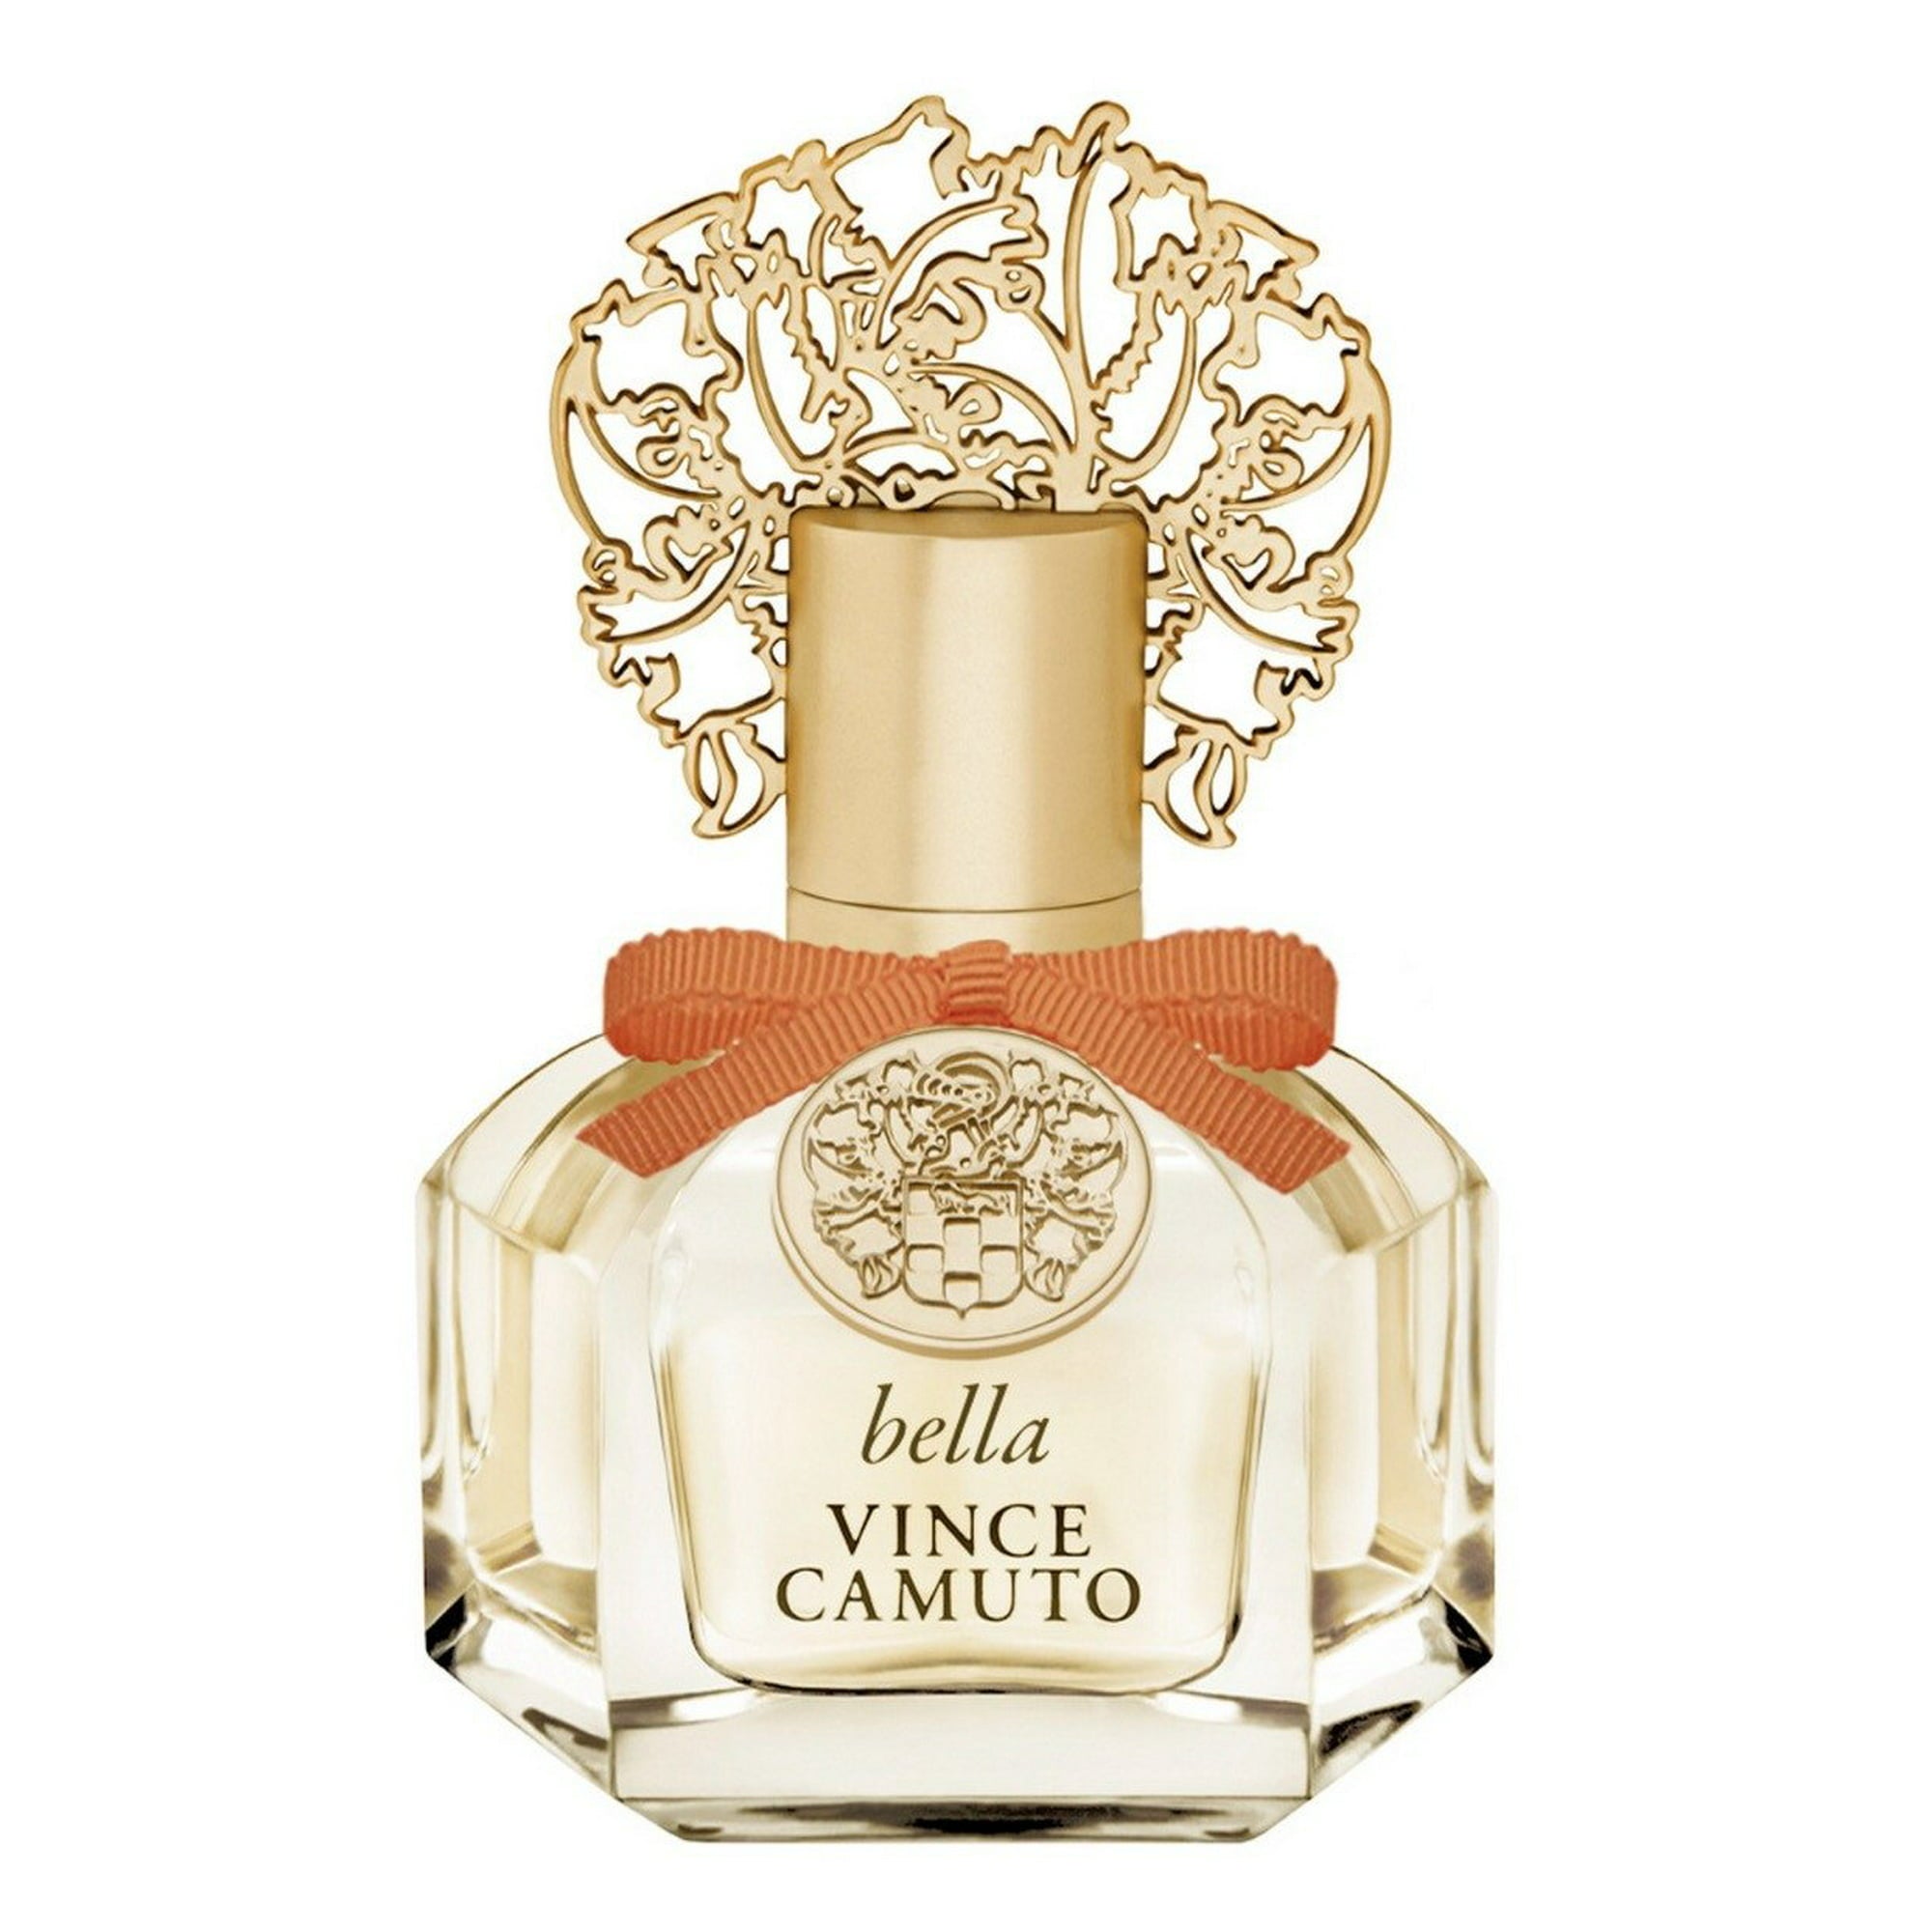 Vince Camuto Amore Eau de Parfum Spray Perfume for Women, 3.4 Fl Oz : VINCE  CAMUTO: Beauty & Personal Care 